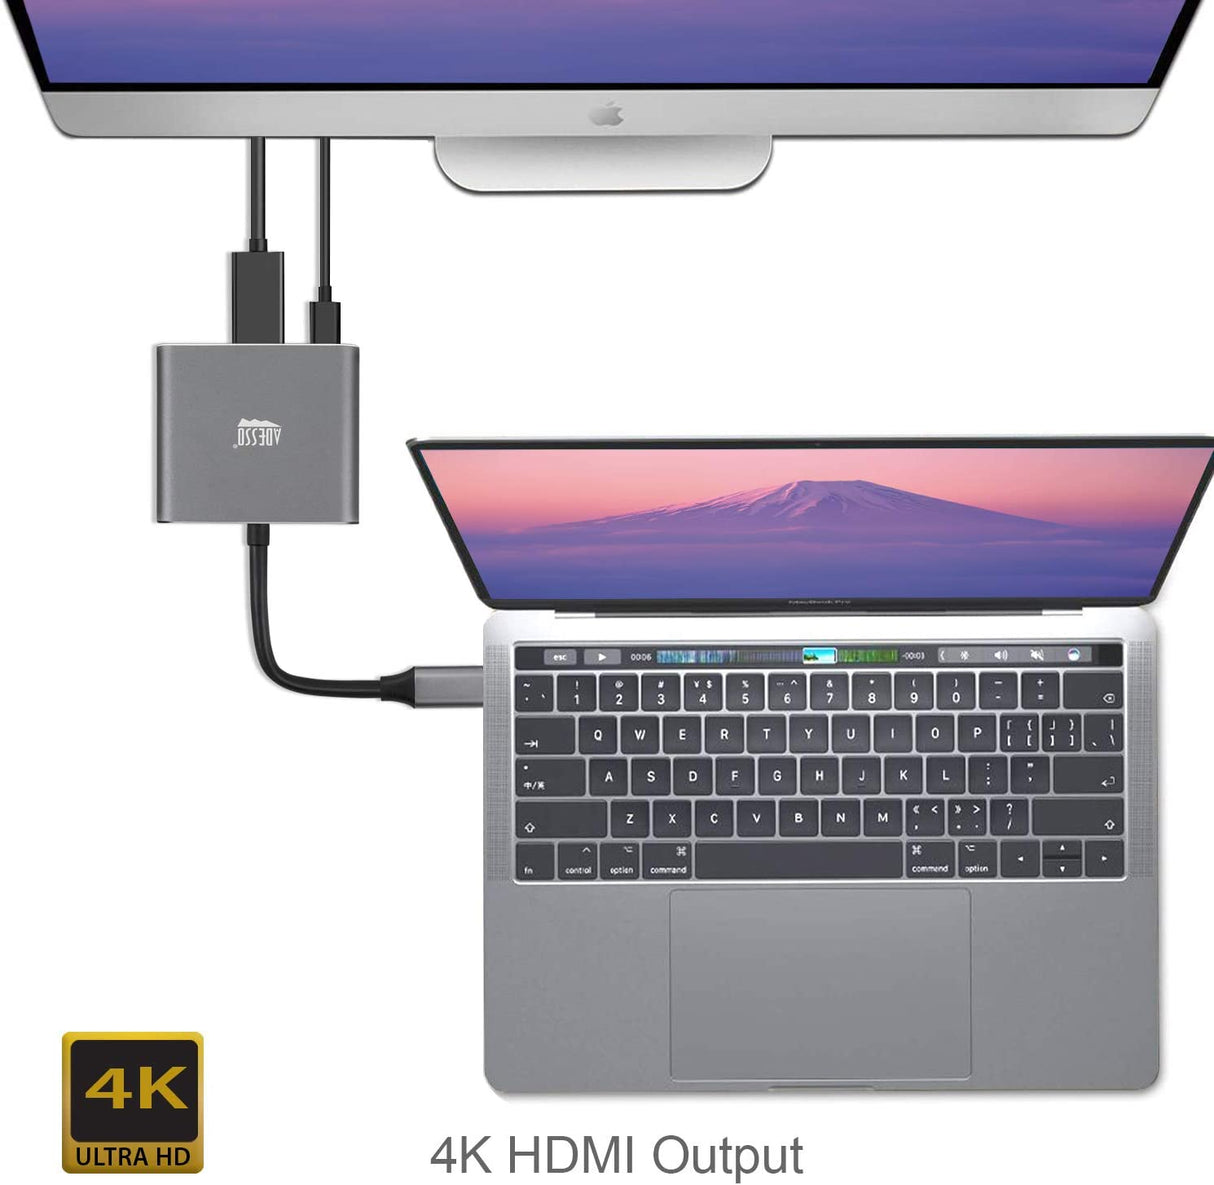 Adesso 3-in-1 USB-C Multiport Docking Station - Dealtargets.com